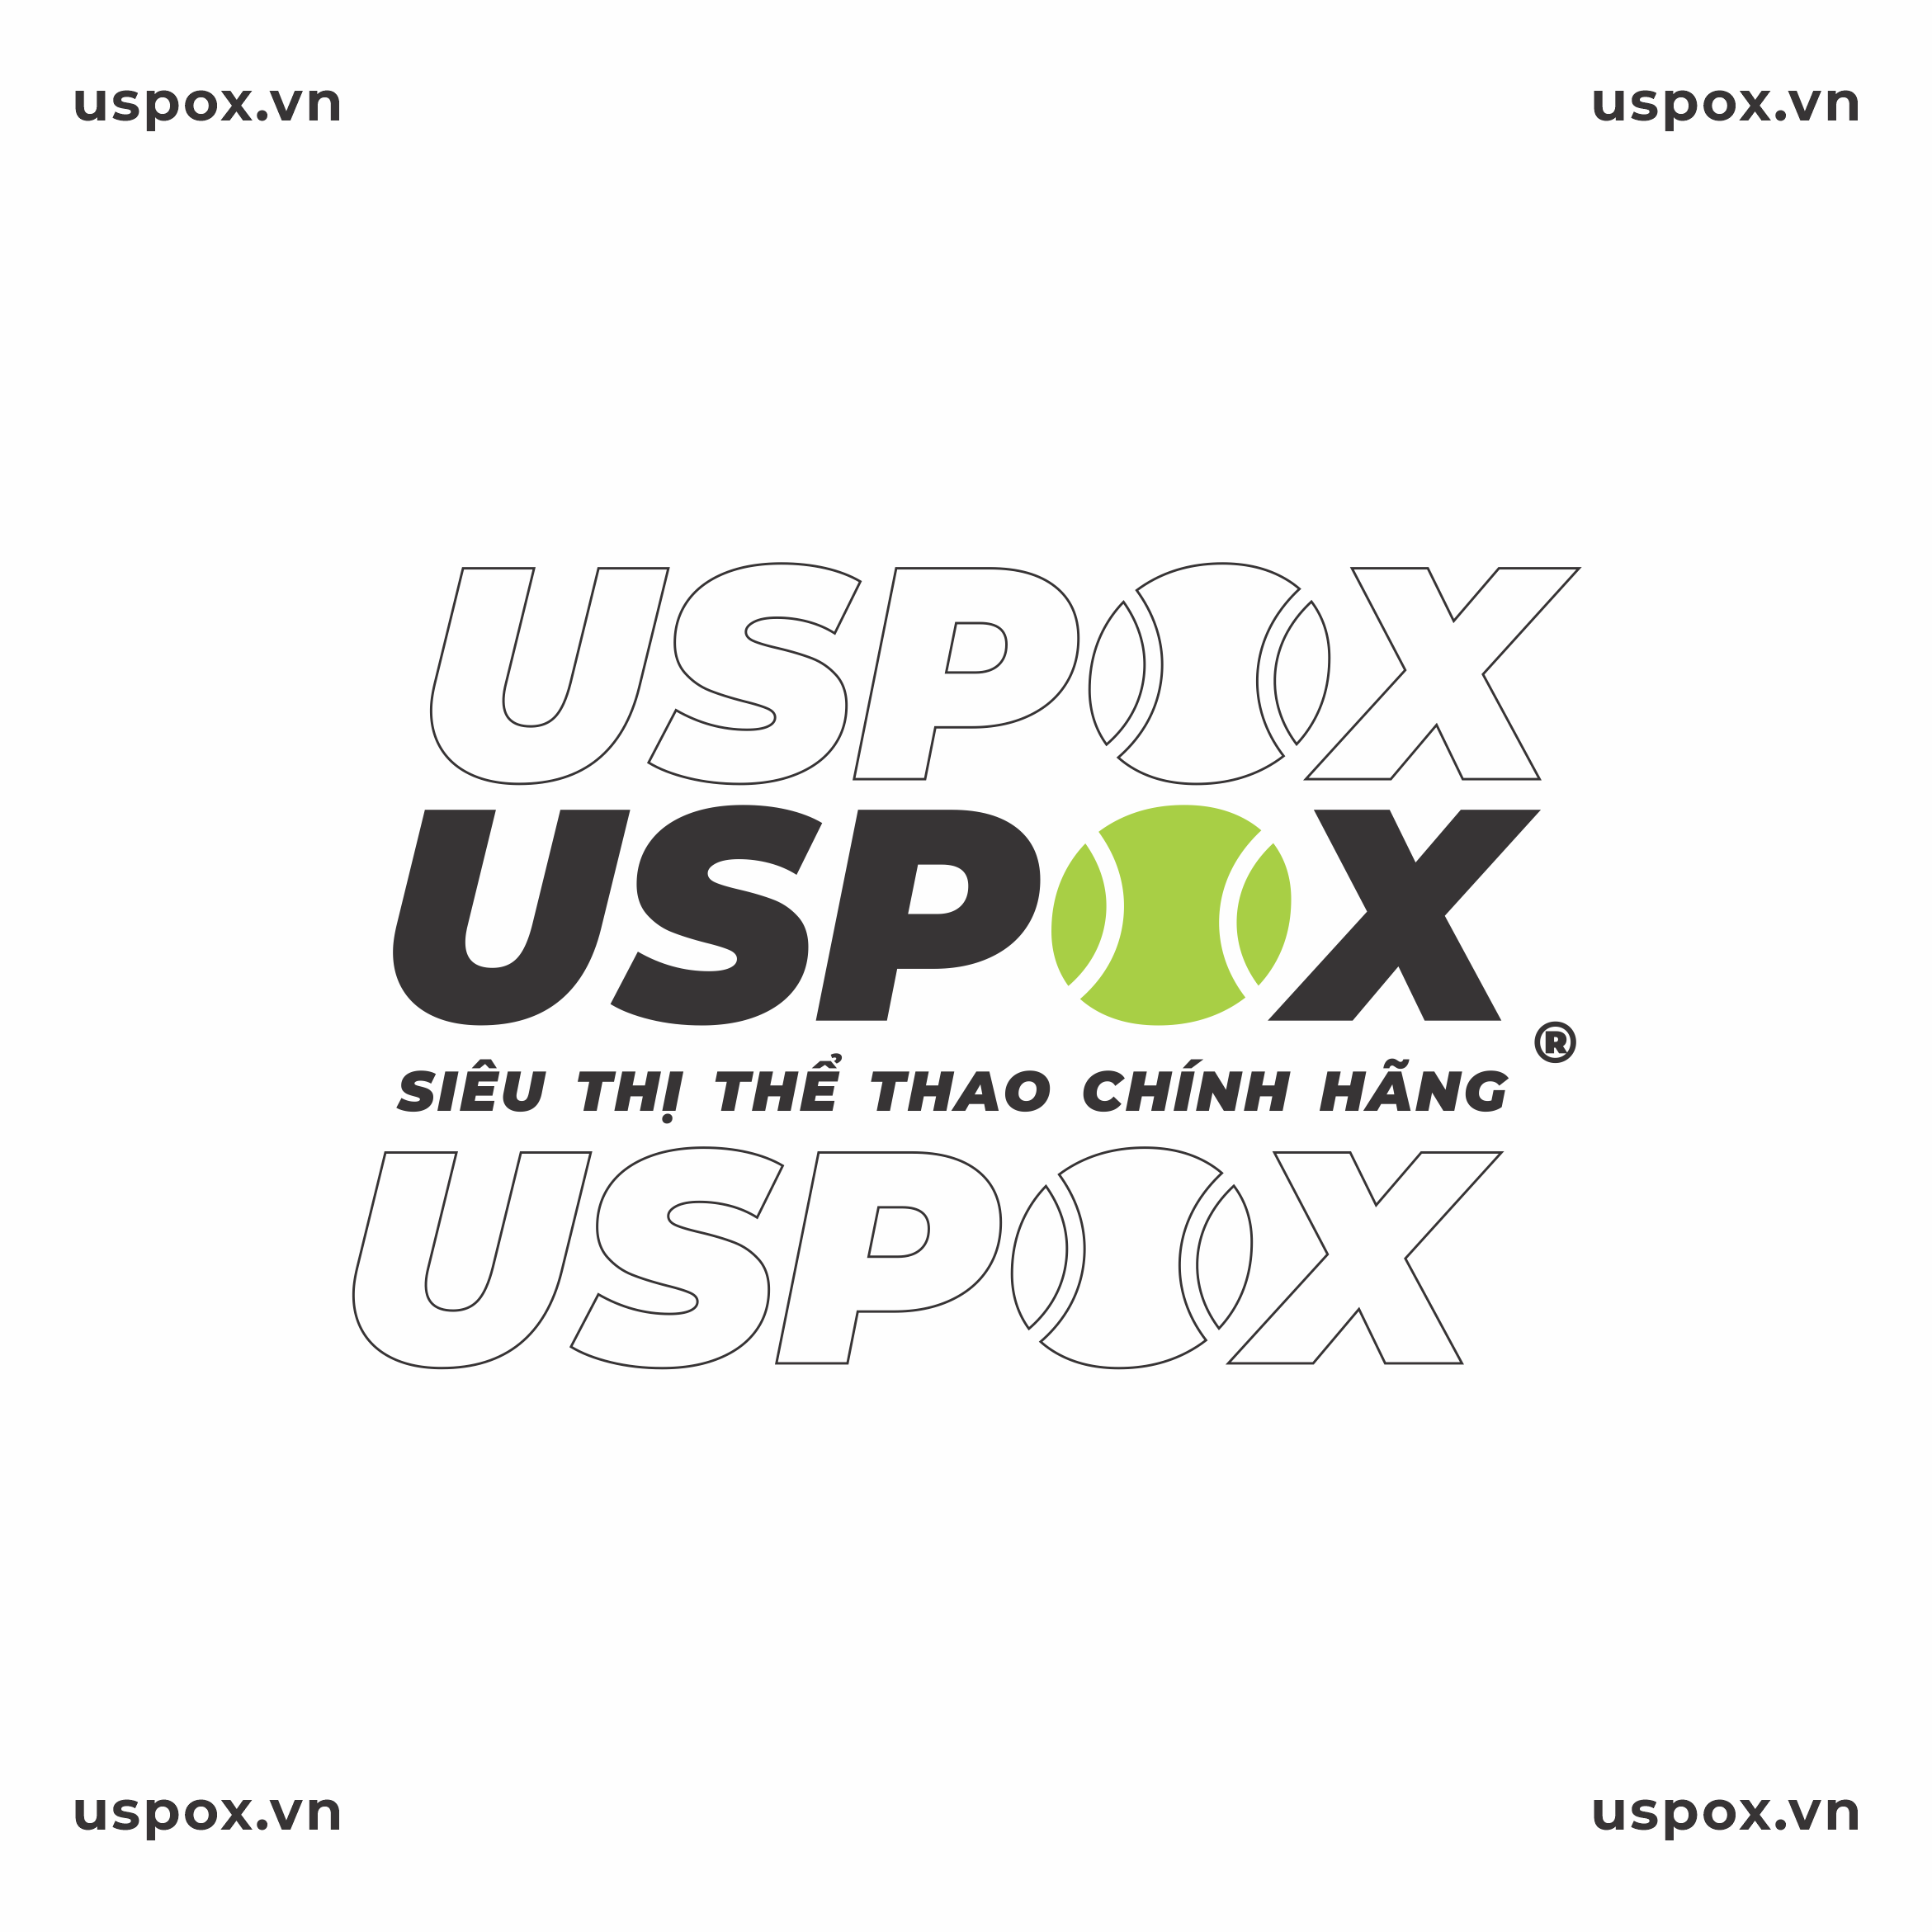 Uspox - Siêu thị giày thể thao chính hãng